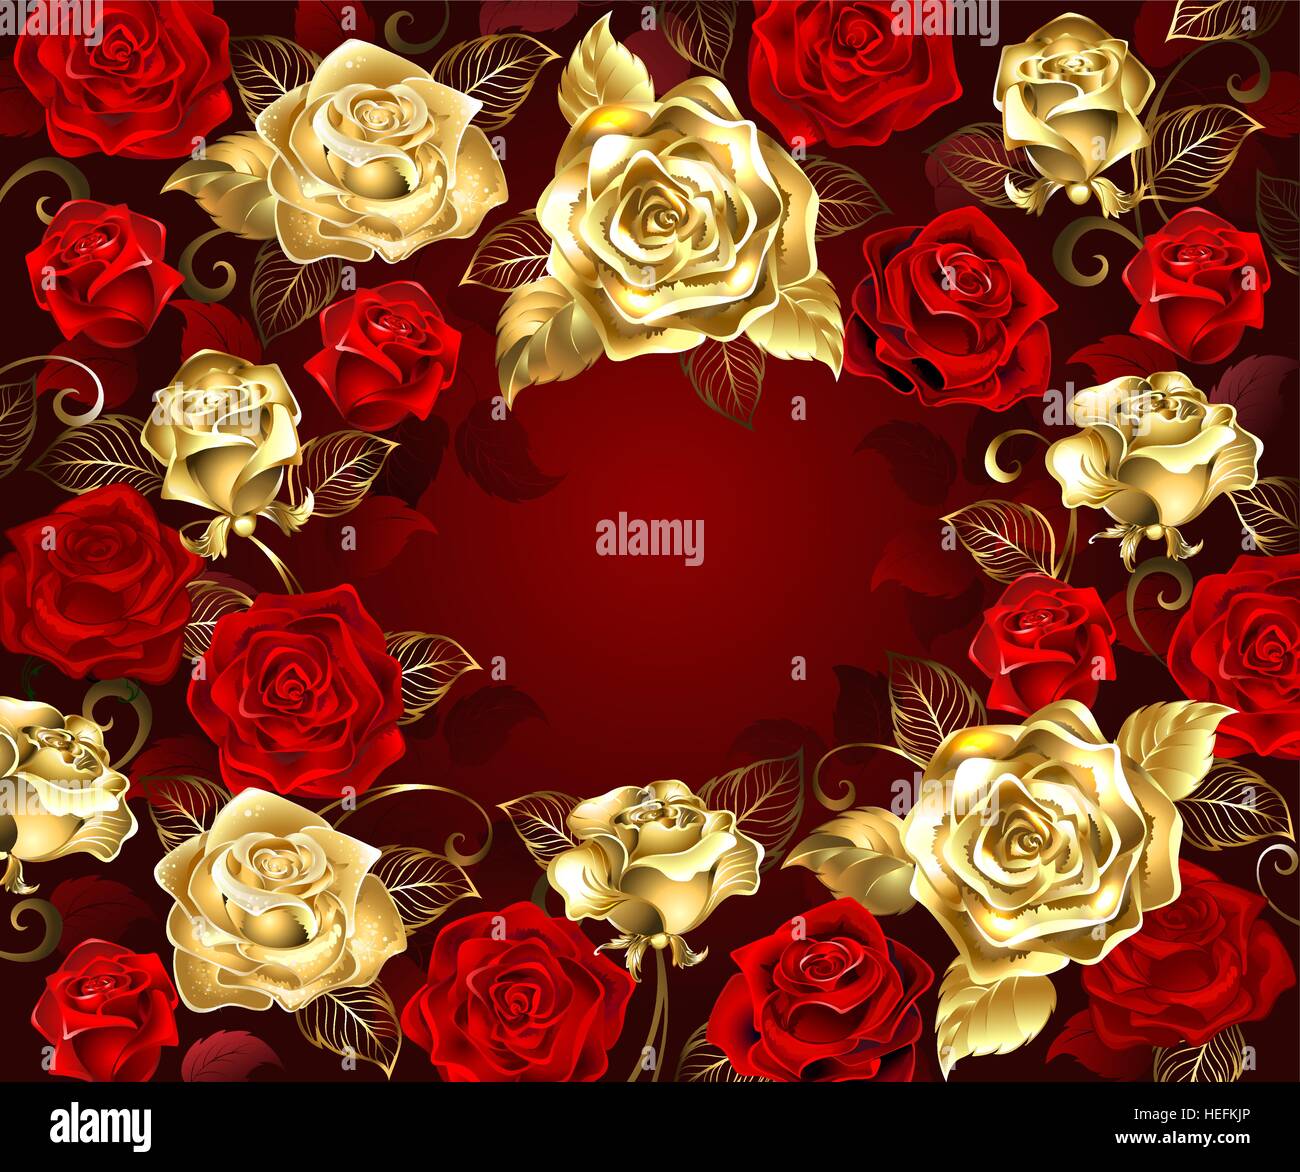 Gold und rote Rosen mit goldenen Blättern auf rotem Grund. Stock Vektor